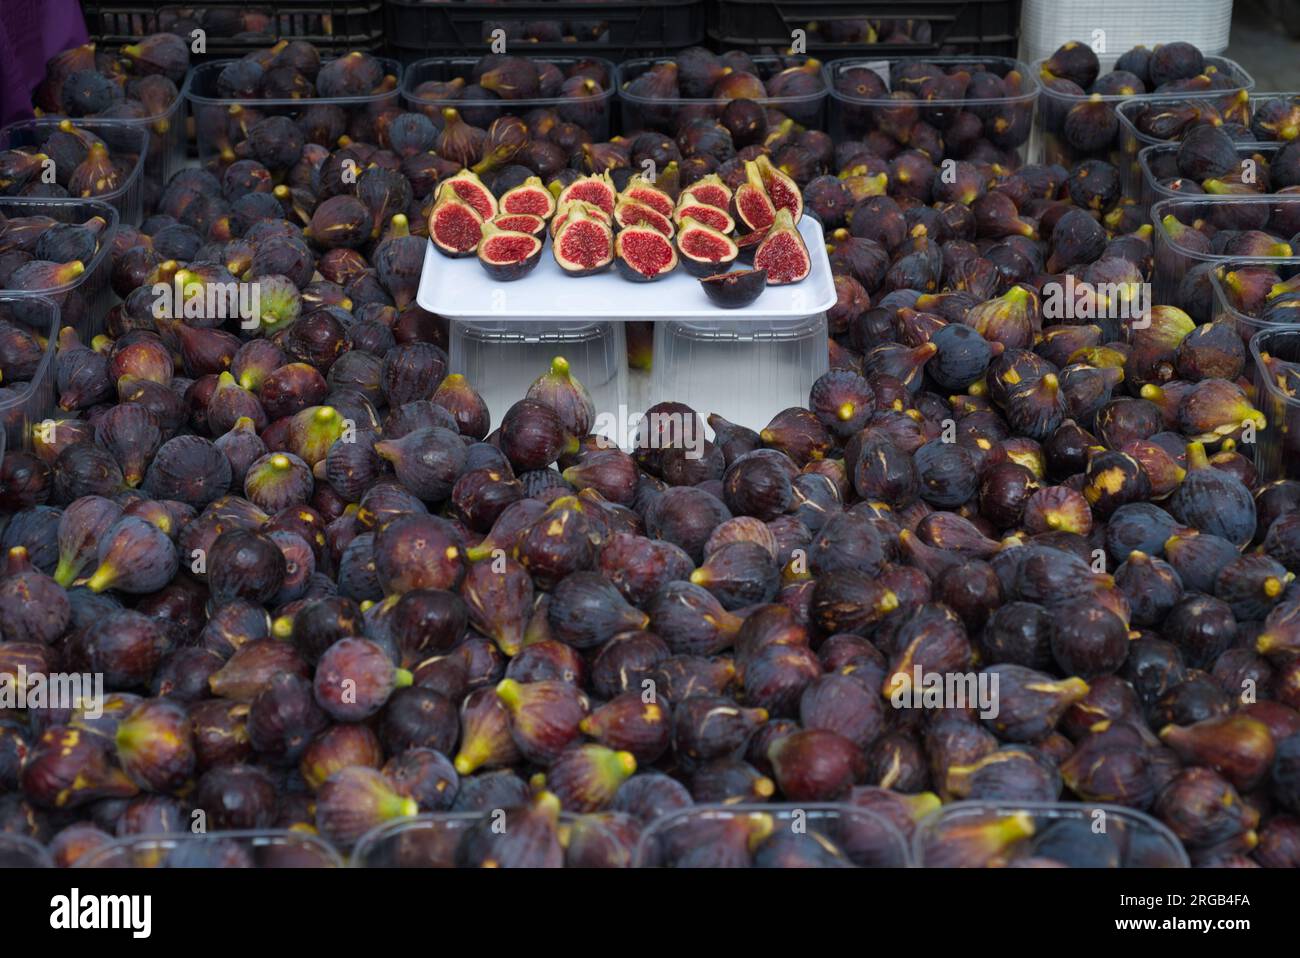 .A fruit and vegetable stall in the Seo de Urgell street market.  Un puesto de frutas y verduras en el mercado callejero de la Seo de Urgell. Stock Photo